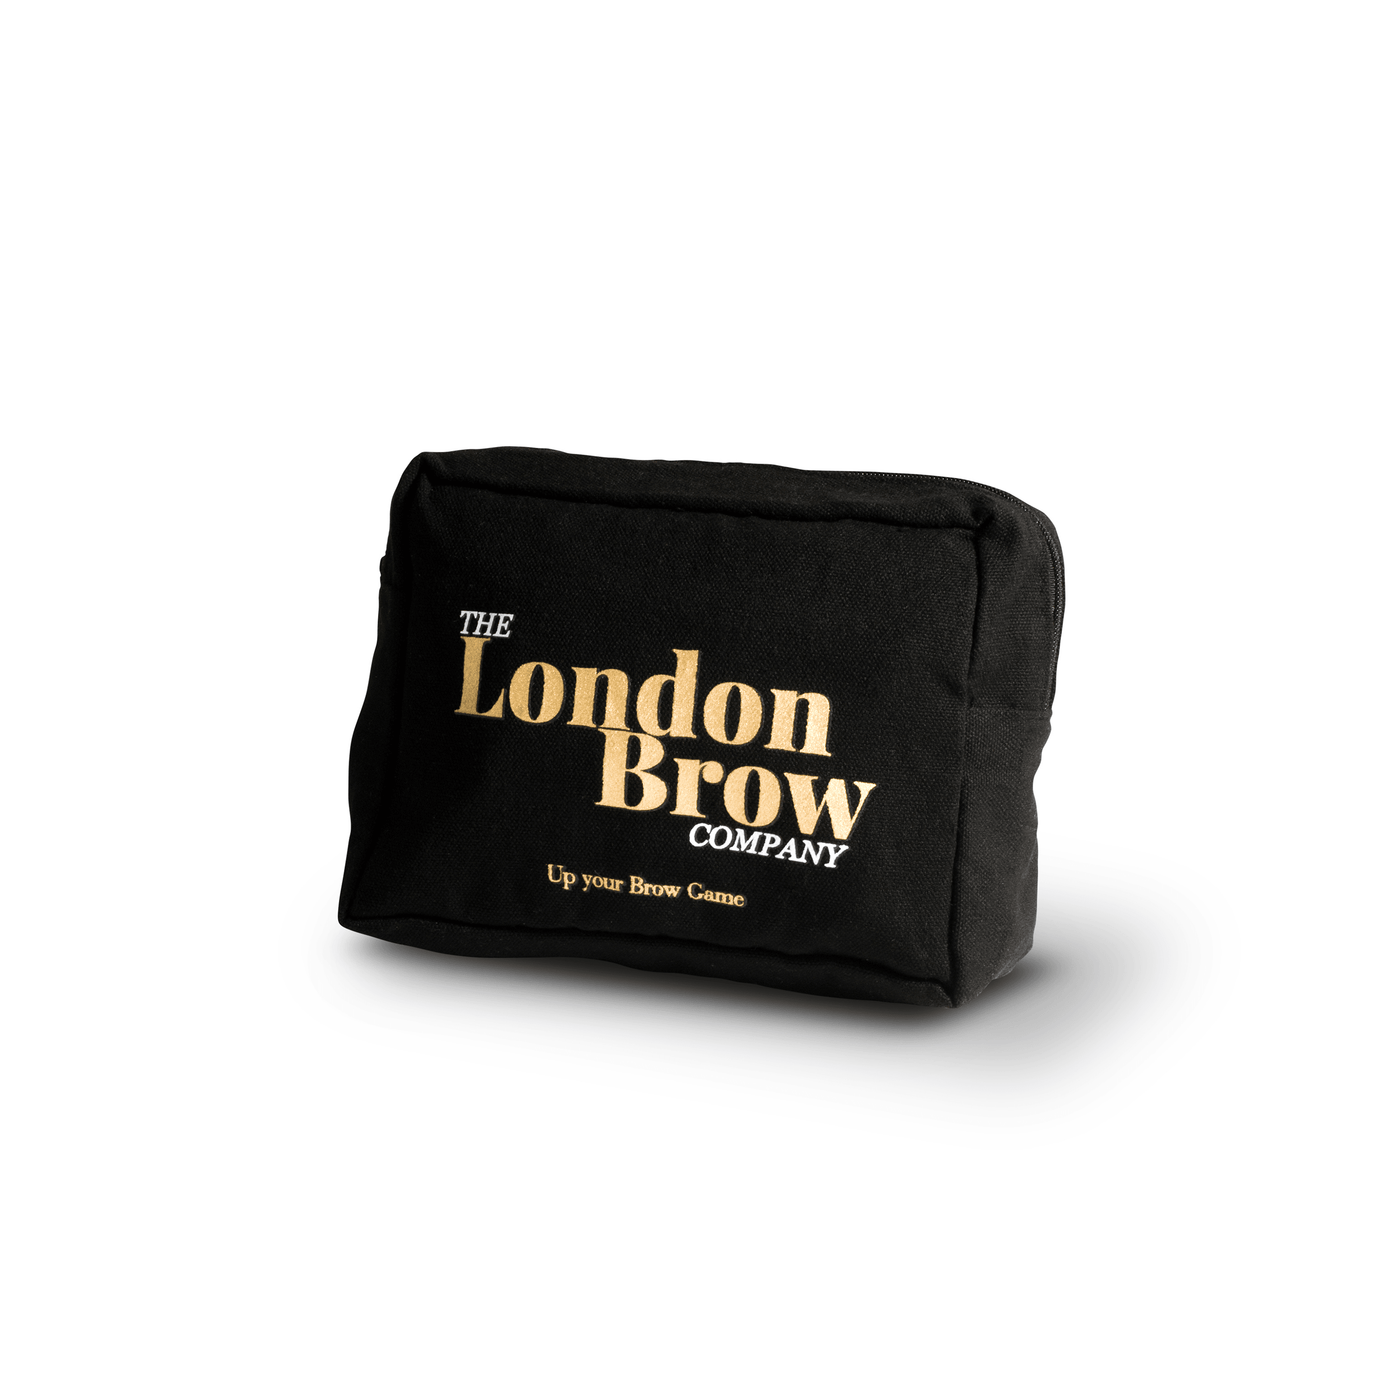 London Brow Bag - The London Brow Company